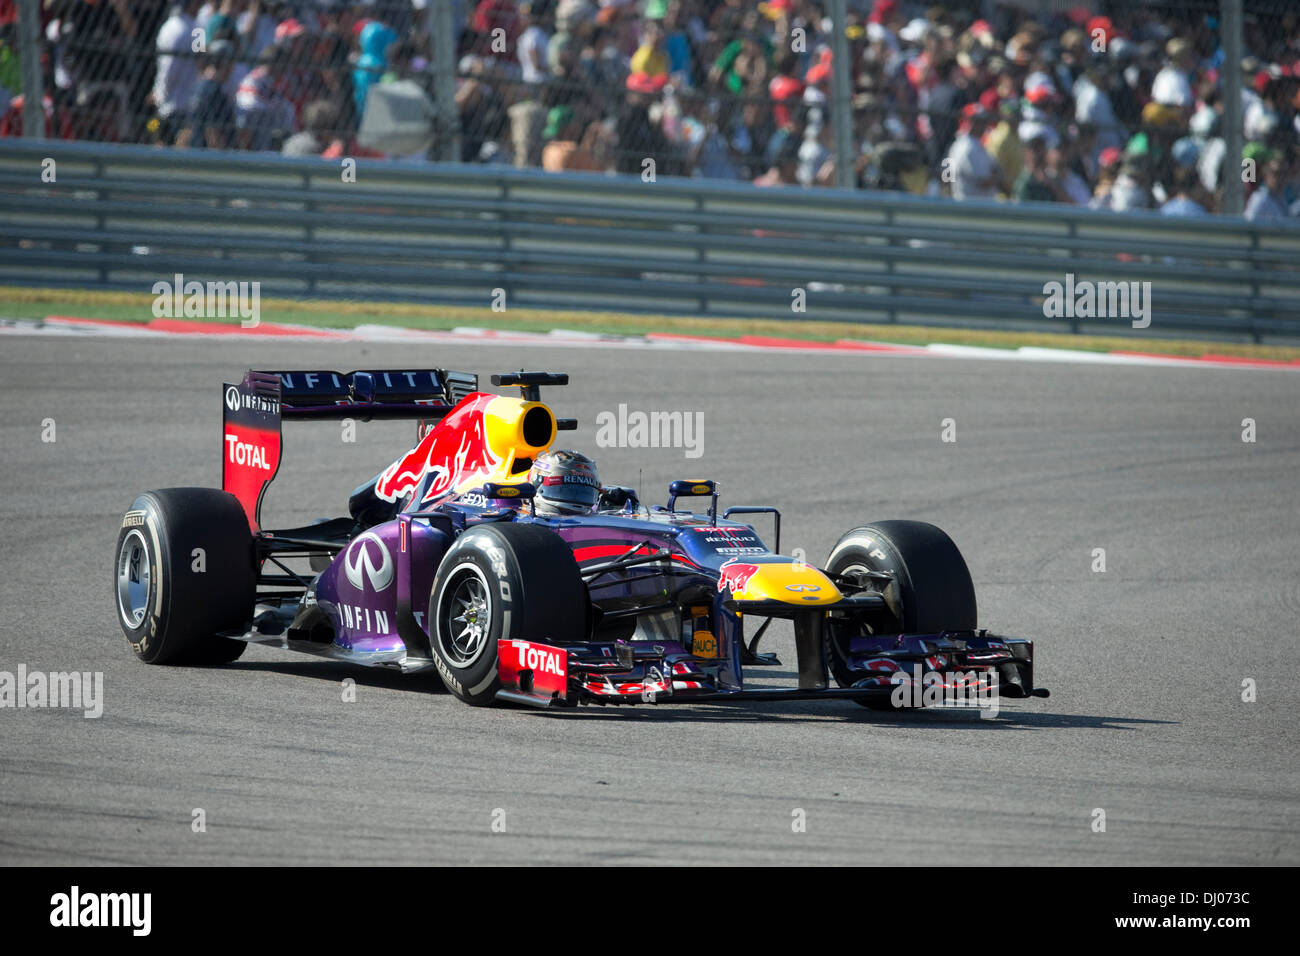 Le pilote allemand Sebastian Vettel à l'United States Grand Prix sur le circuit des Amériques d'Austin à l'extérieur de la piste. Banque D'Images